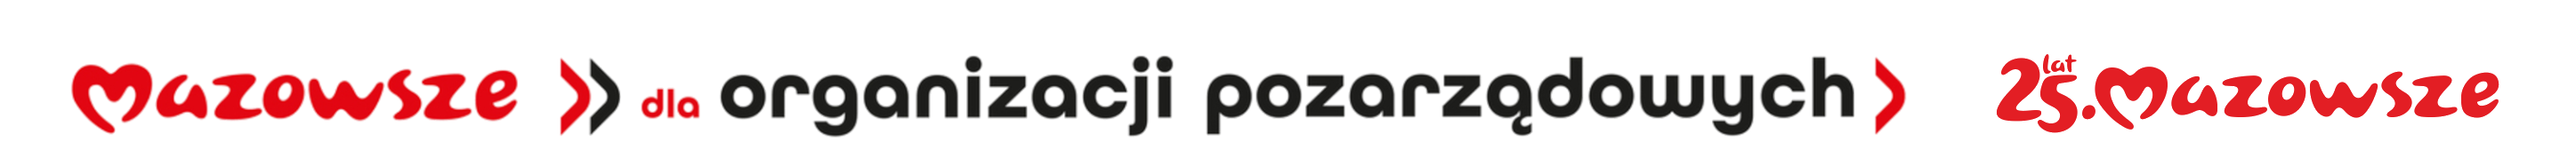 loga Mazowsze dla organizacji pozarządowych 25lat Mazowsze